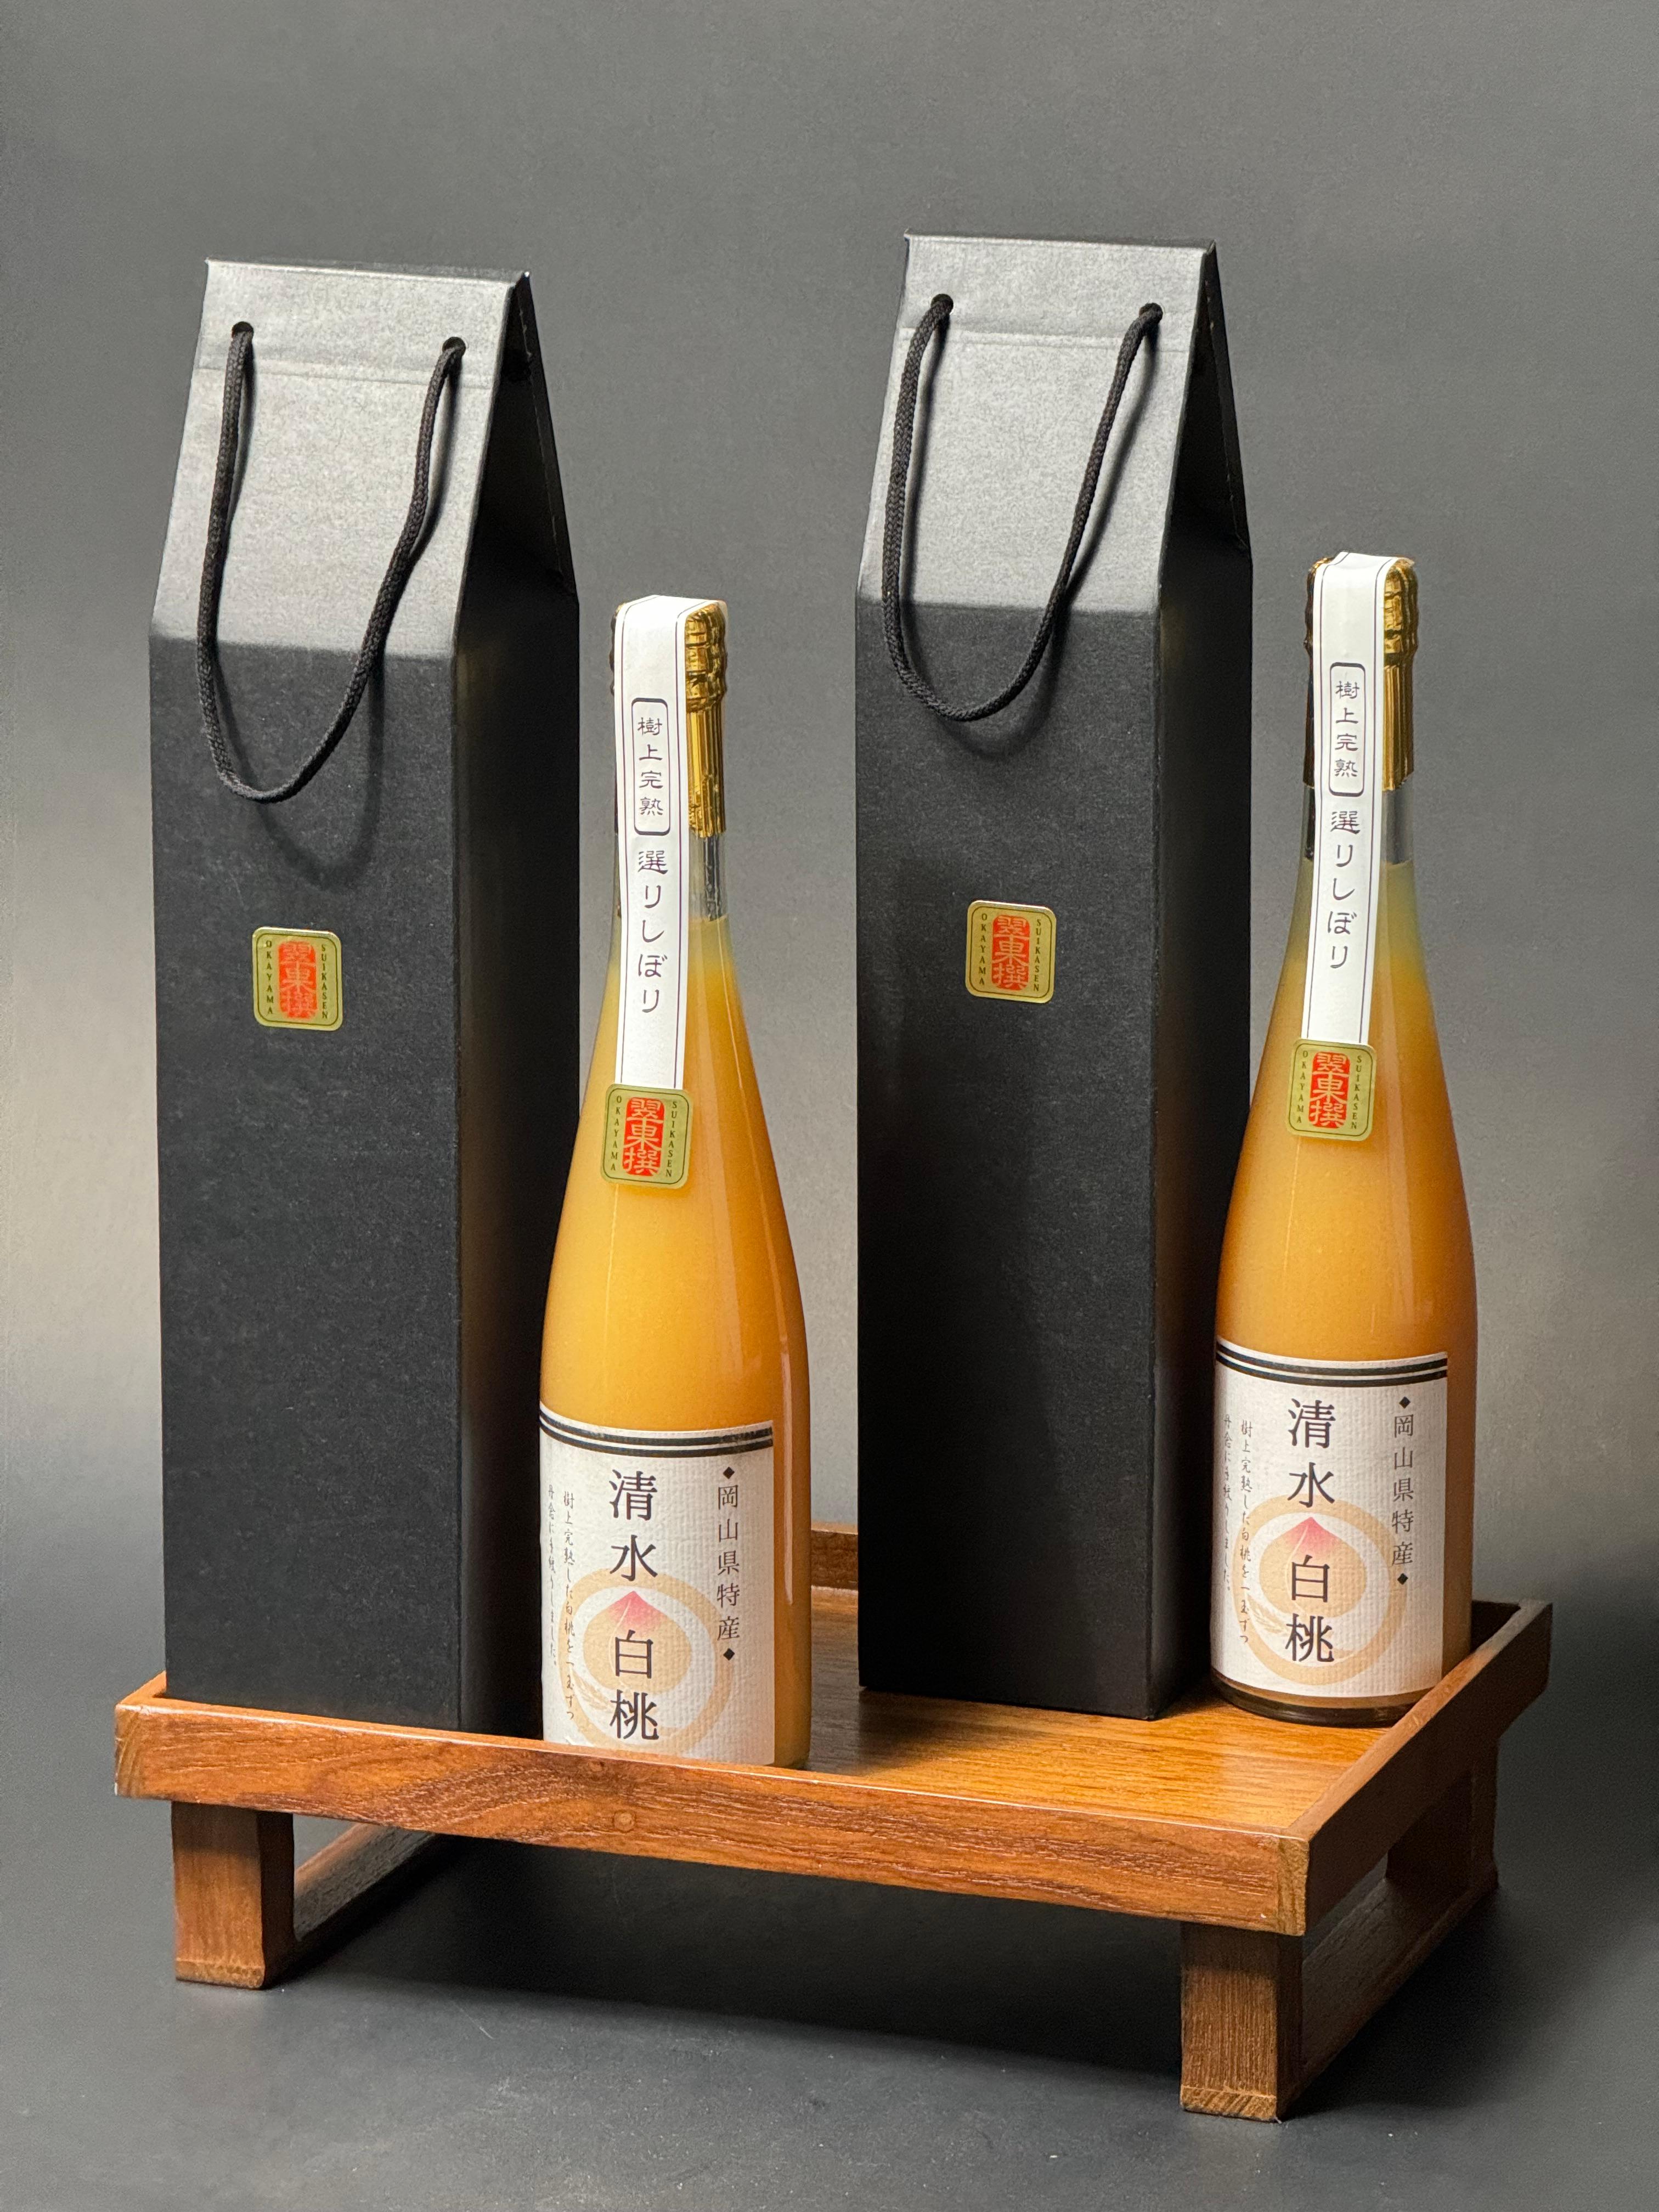 Japan Premium Peach juice 500ml